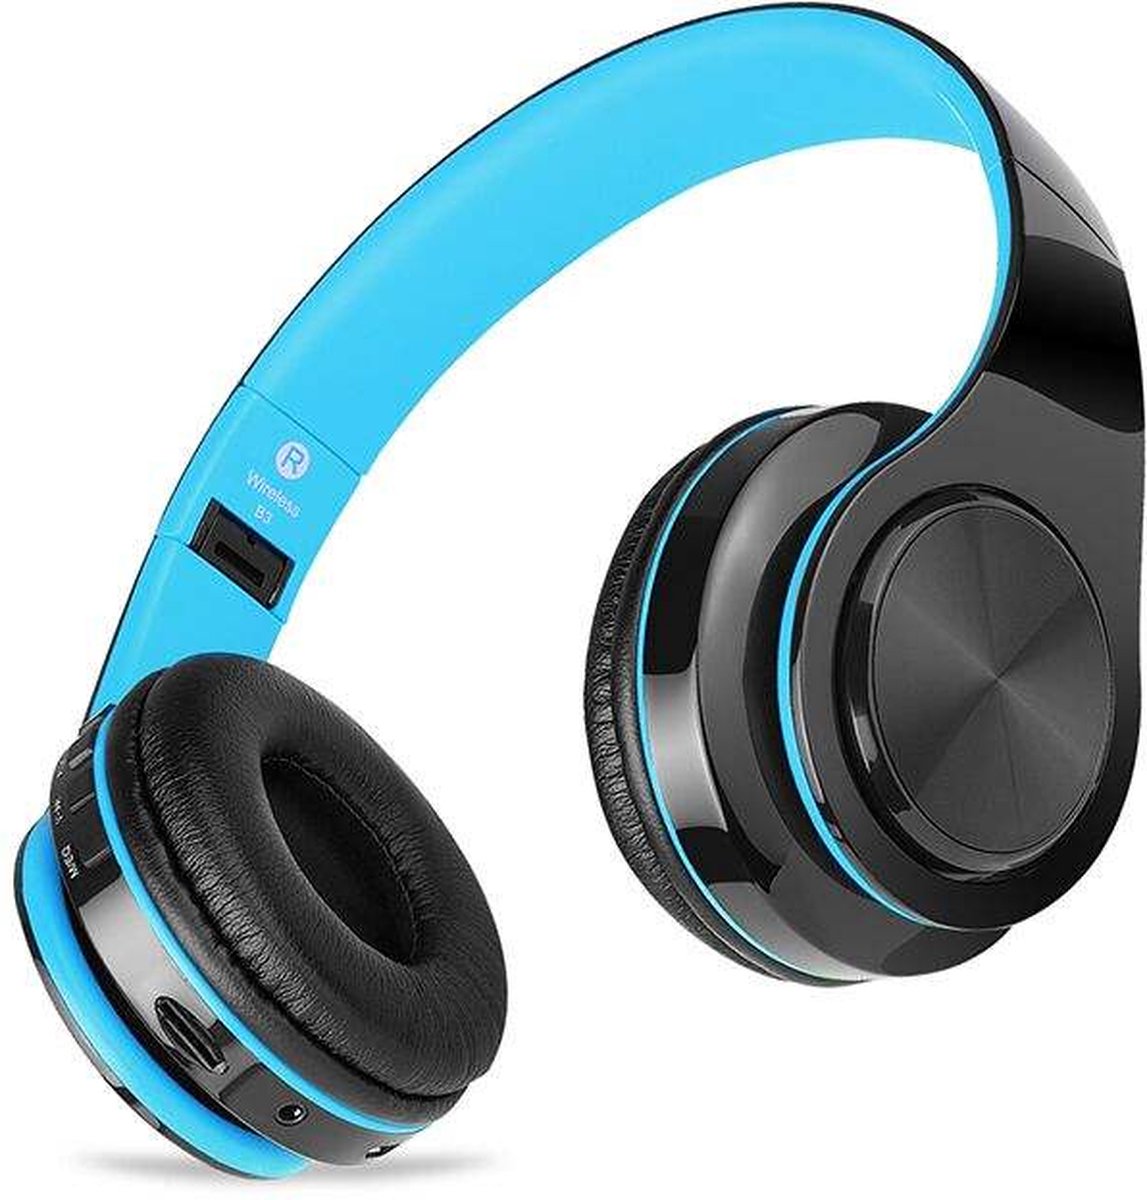 B3 Draadloze koptelefoon - Koptelefoon - Headphone - Wireless Headphone - Bluetooth Koptelefoon - Koptelefoon Draadloos - Blauw